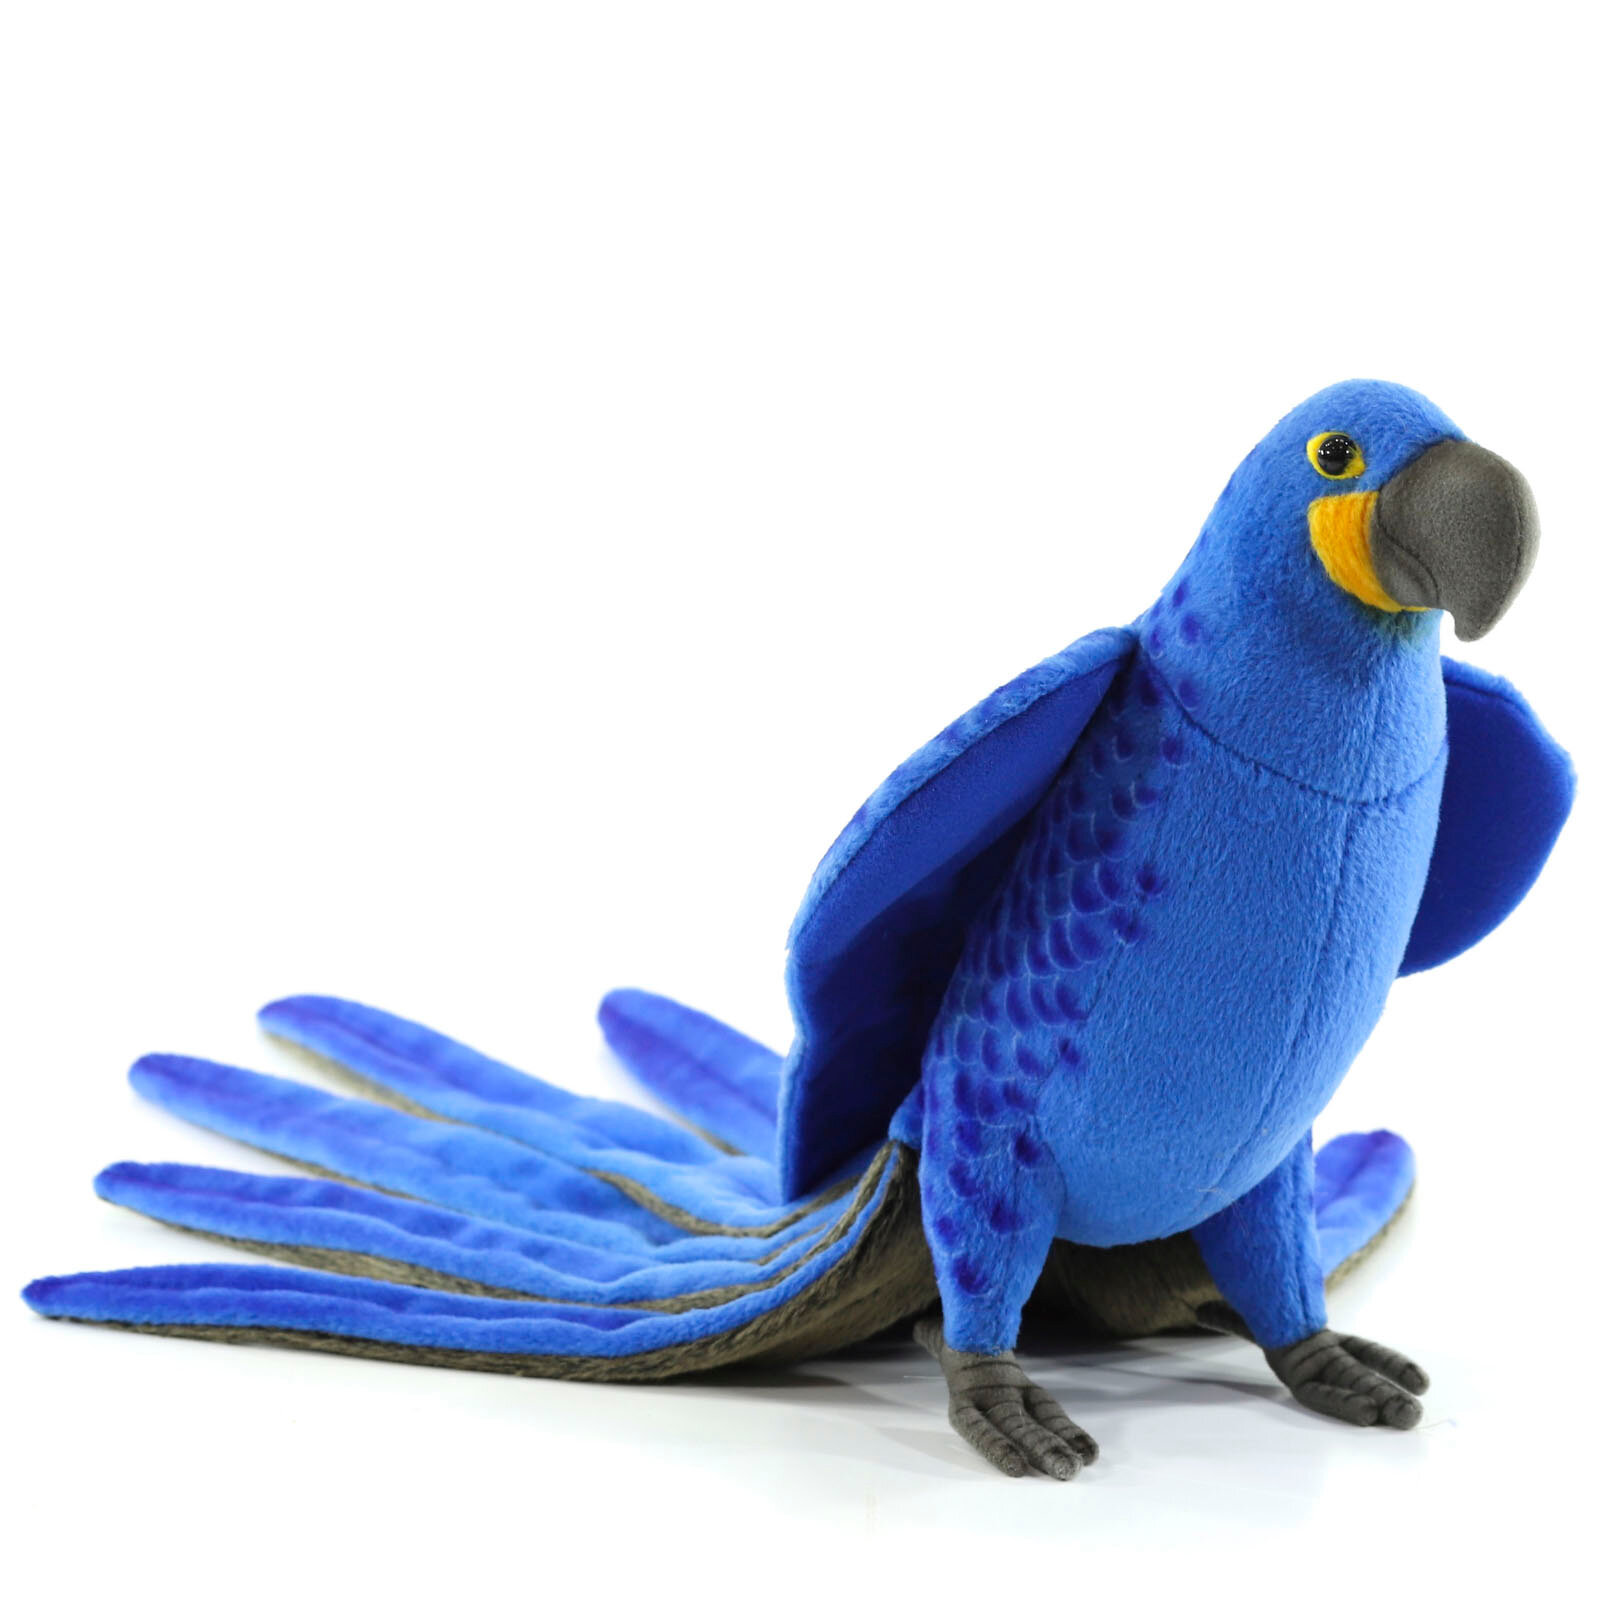 Реалистичная мягкая игрушка Hansa Creation 7371 Попугай ара гиацинтовый, 50 см